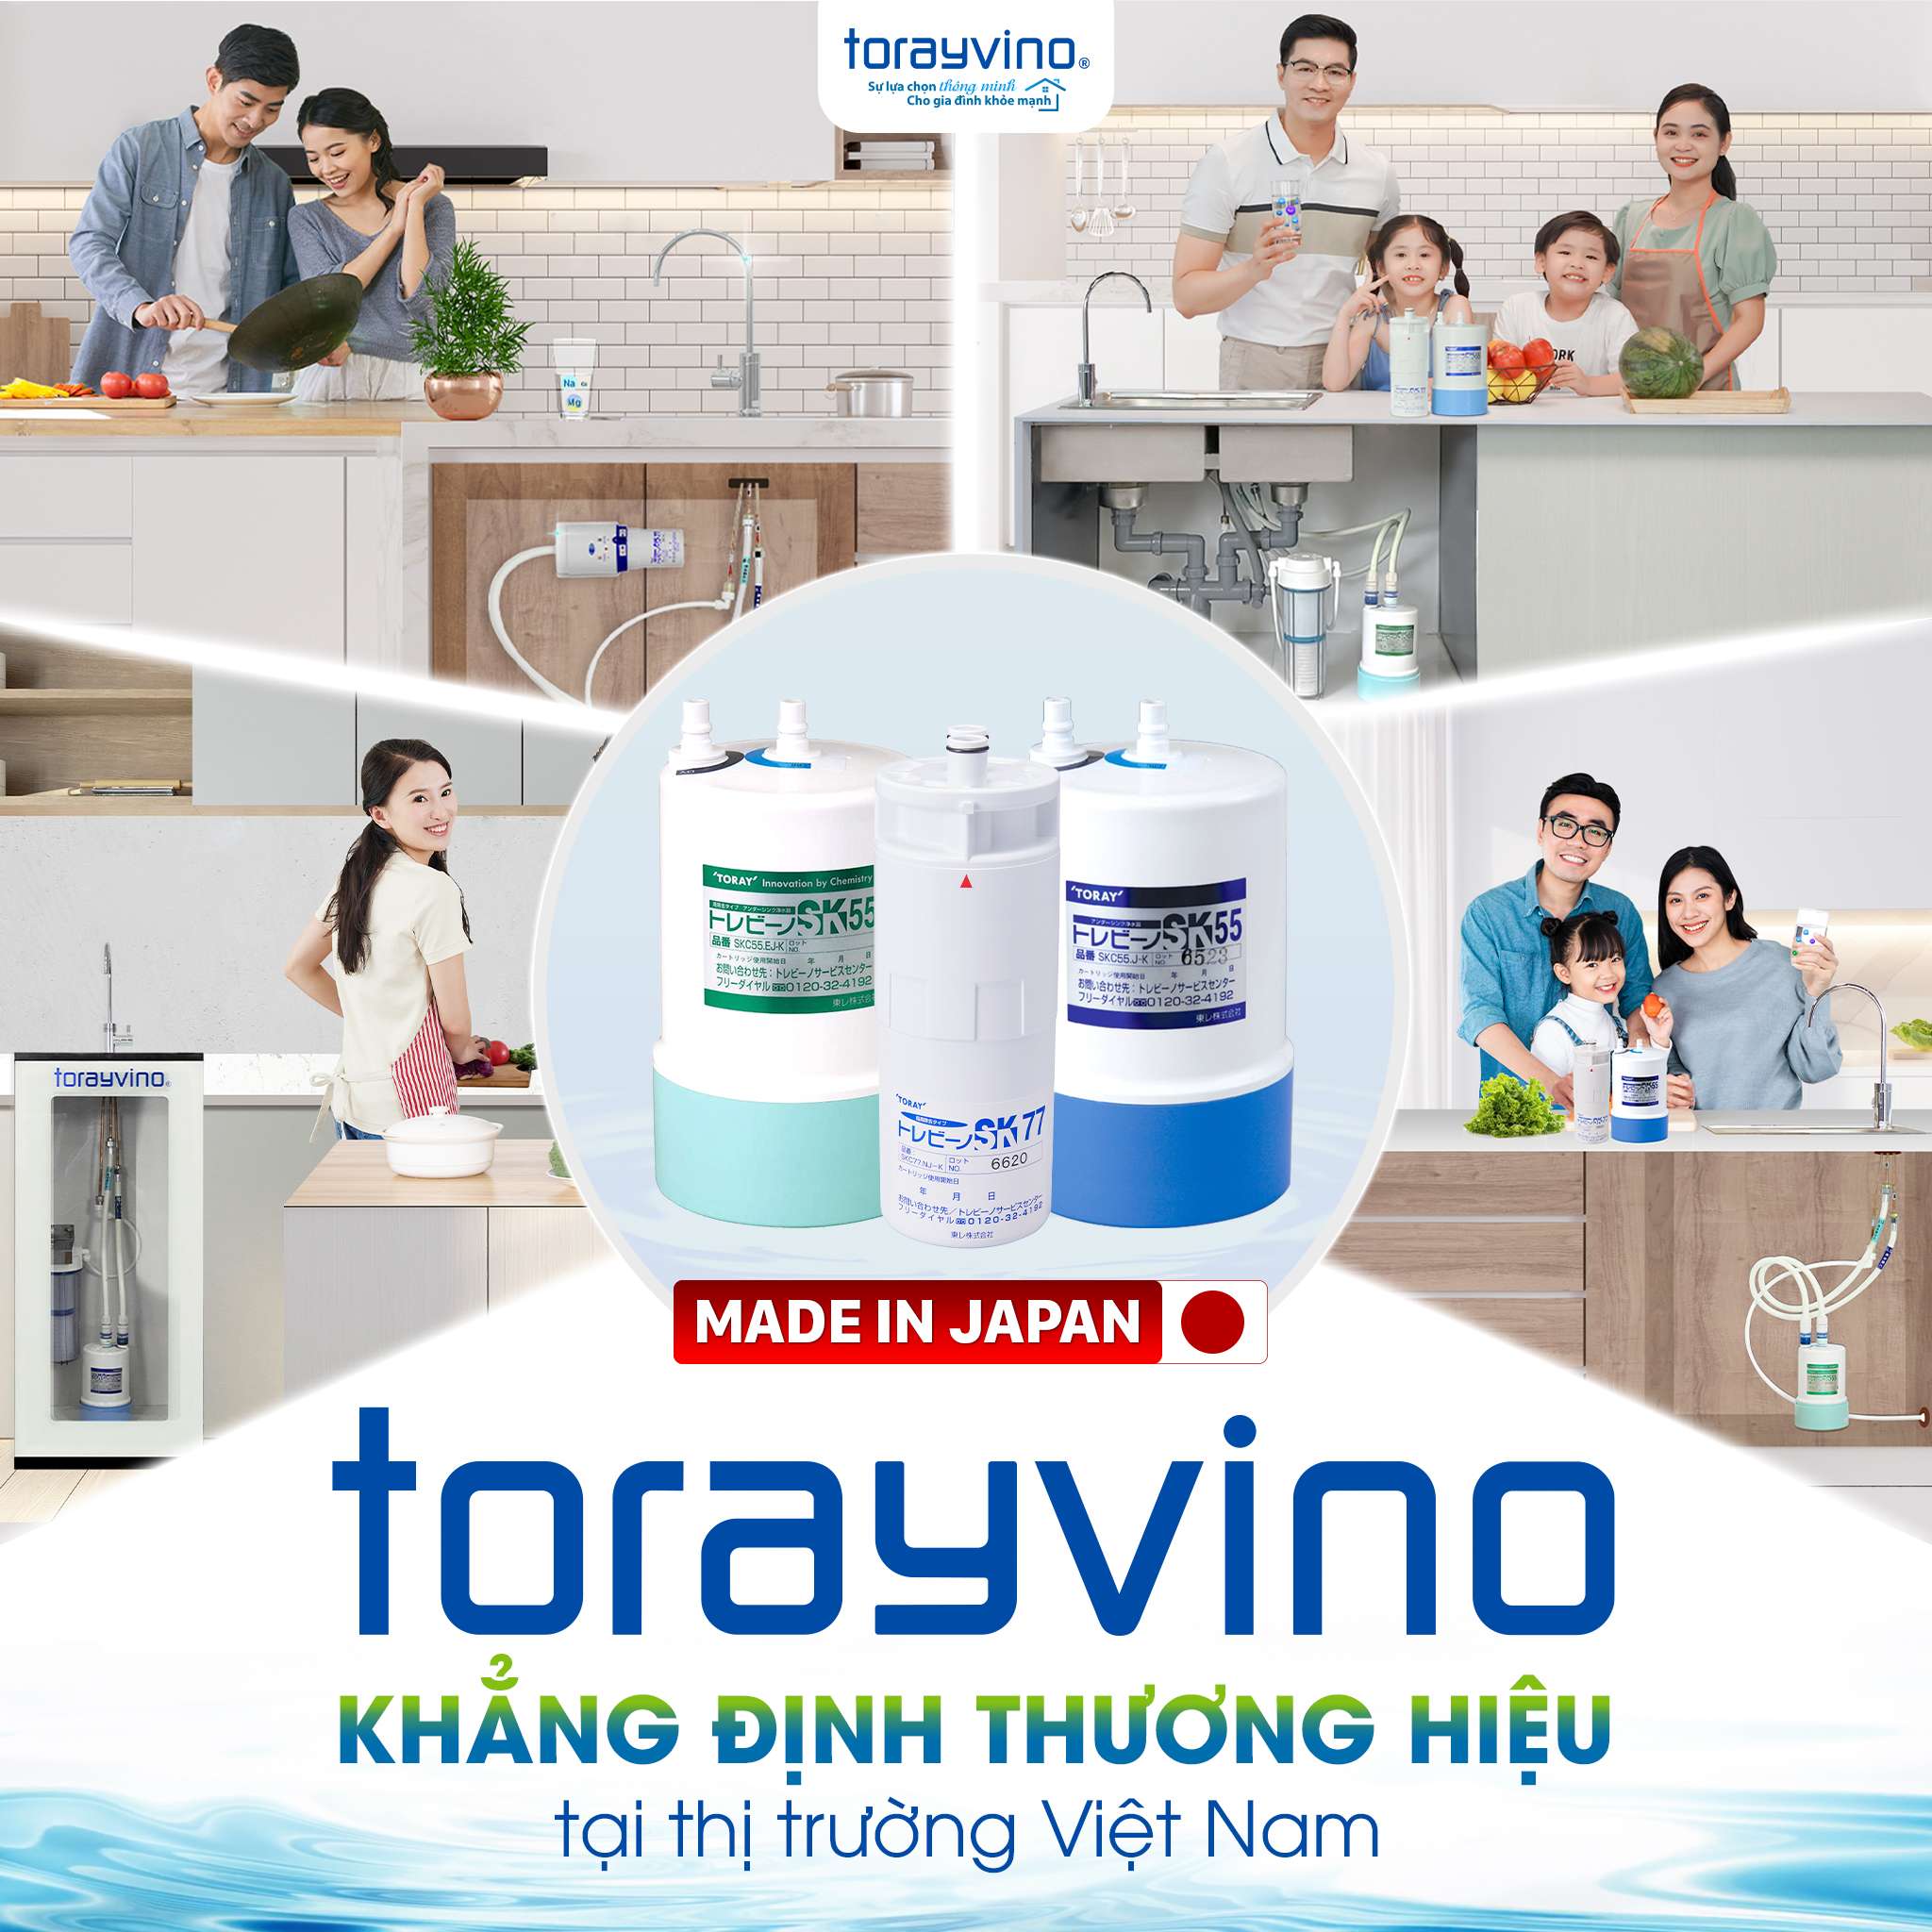 Nhiều gia đình Việt tin chọn máy lọc nước để gầm tủ bếp Torayvino chất lượng nhập khẩu Nhật Bản cho căn bếp của mình